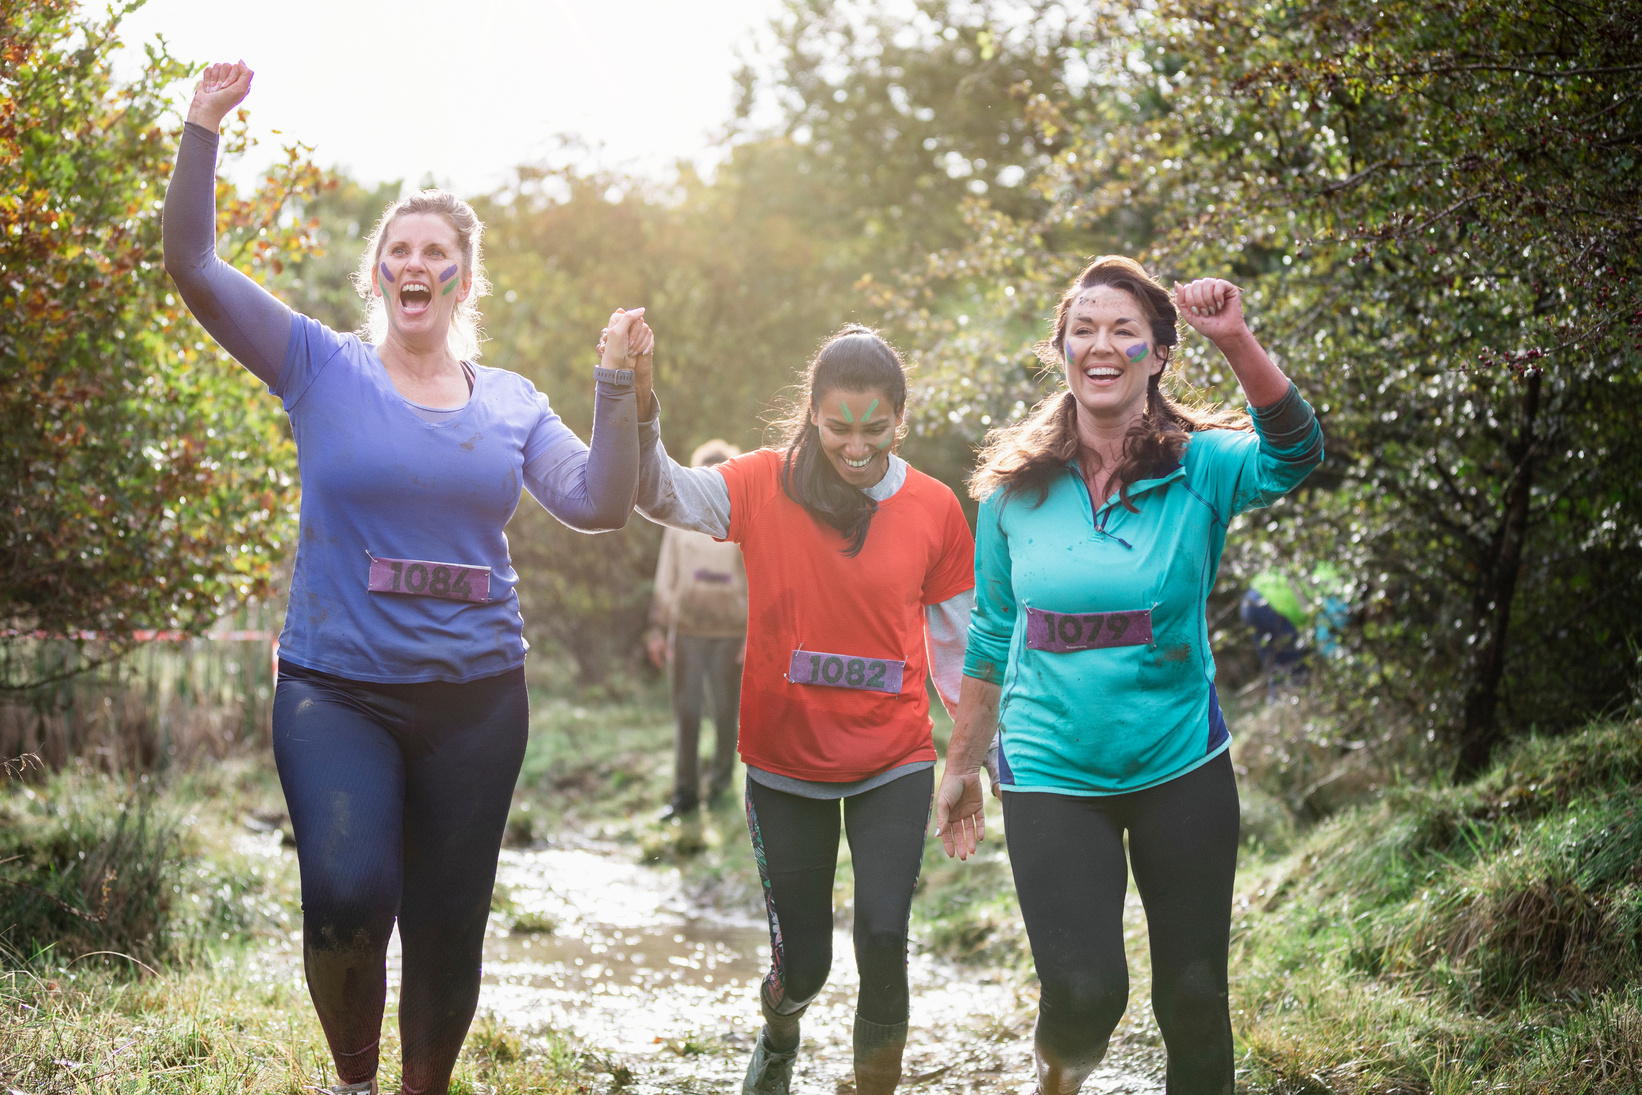 Cheerful women finishing muddy charity run together